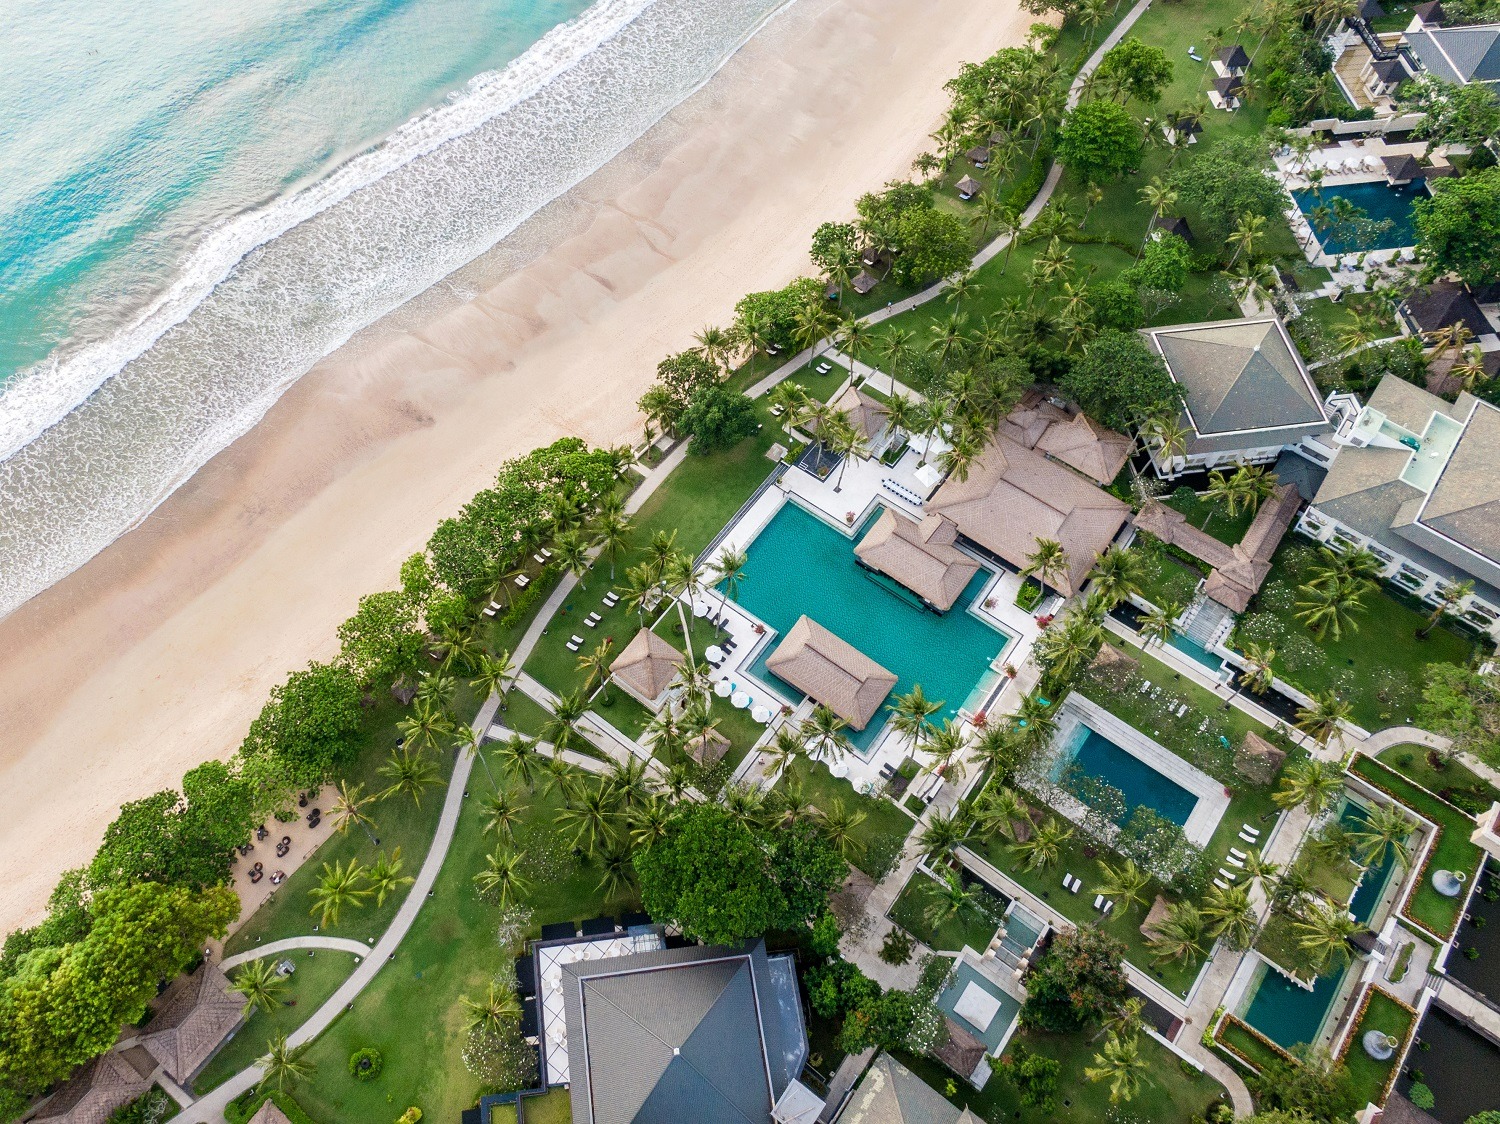  InterContinental Bali Resort dengan bangga menerima penghargaan sebagai Pemenang kategori Resor Tepi Pantai Terbaik oleh TTG Travel Awards 